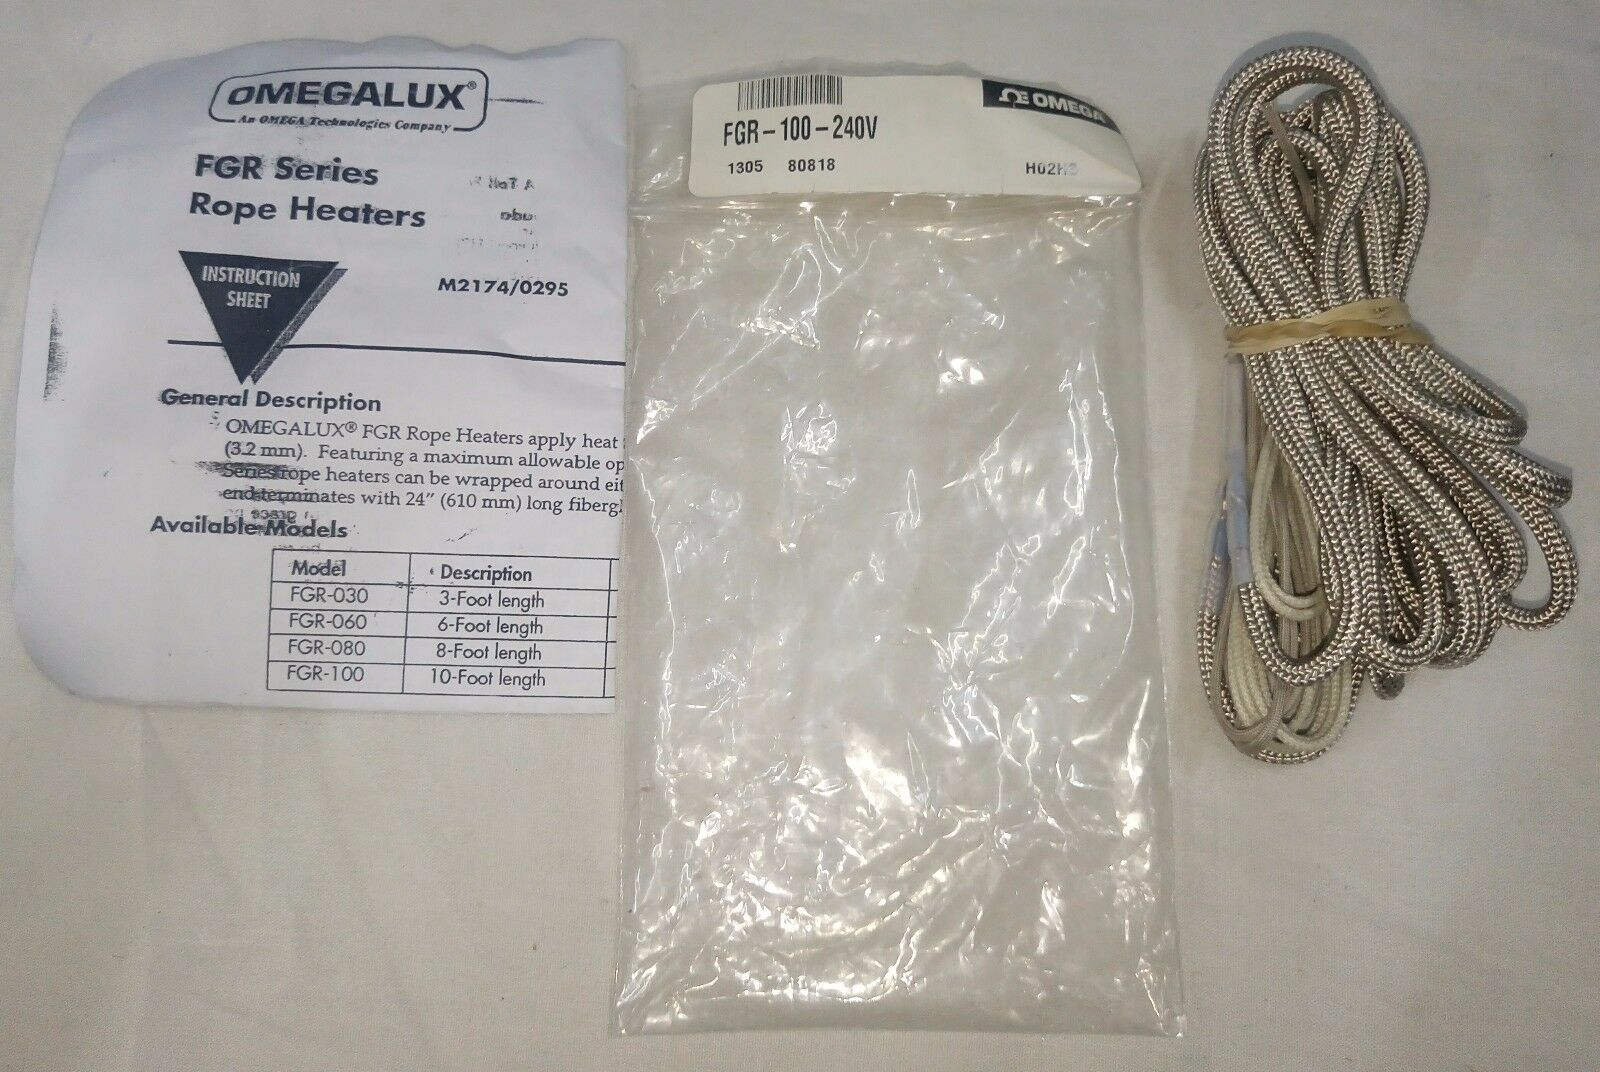 Omegalux fgr-100-240v 绳加热器 10 脚的长度 ， 500w ， 240v 